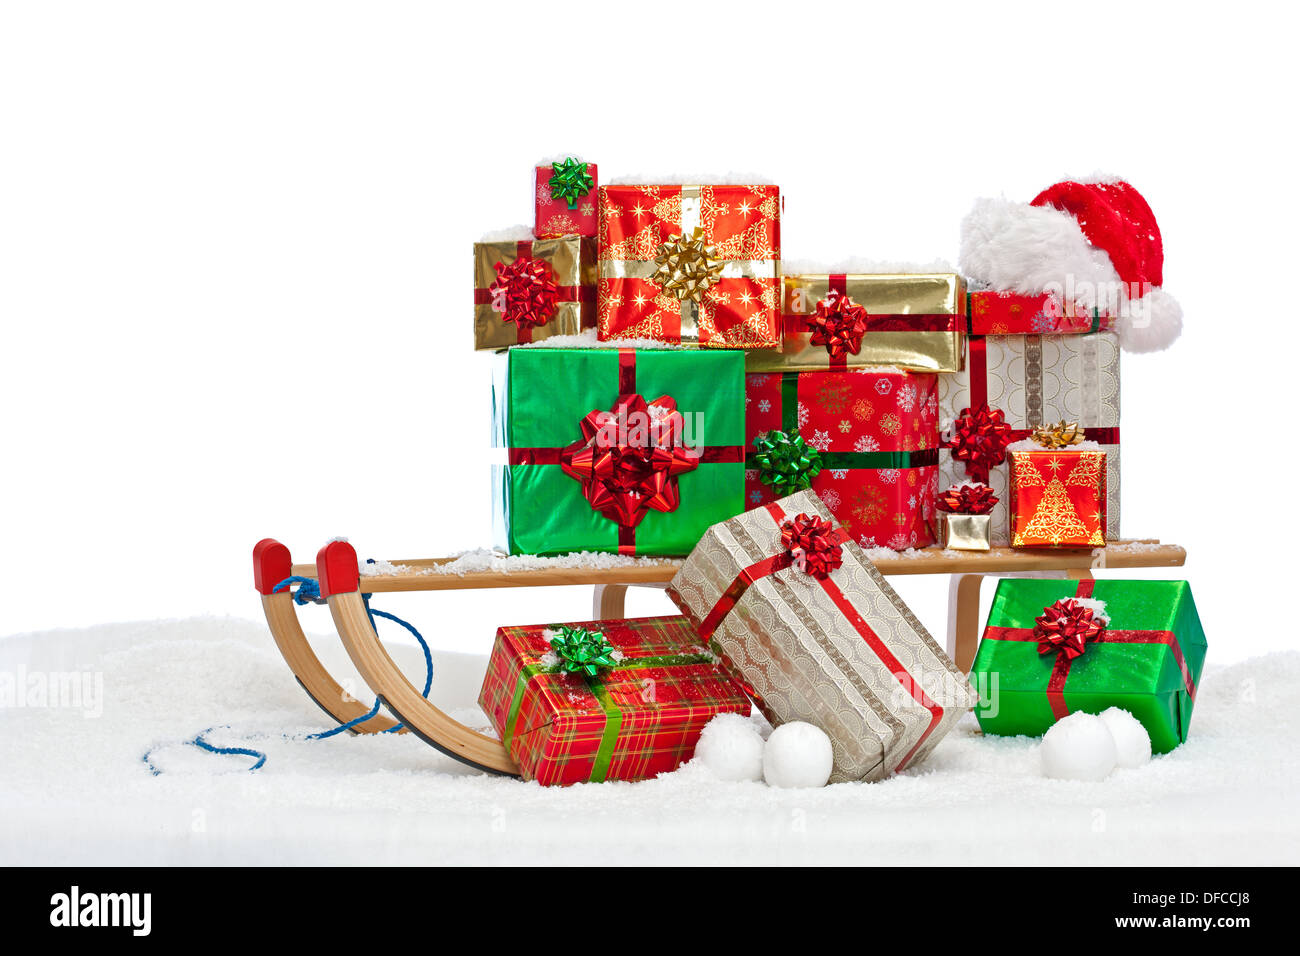 Ein Schlitten beladen mit Geschenk verpackt Weihnachtsgeschenke und eine Weihnachtsmütze, sitzen im Schnee vor einem weißen Hintergrund. Stockfoto